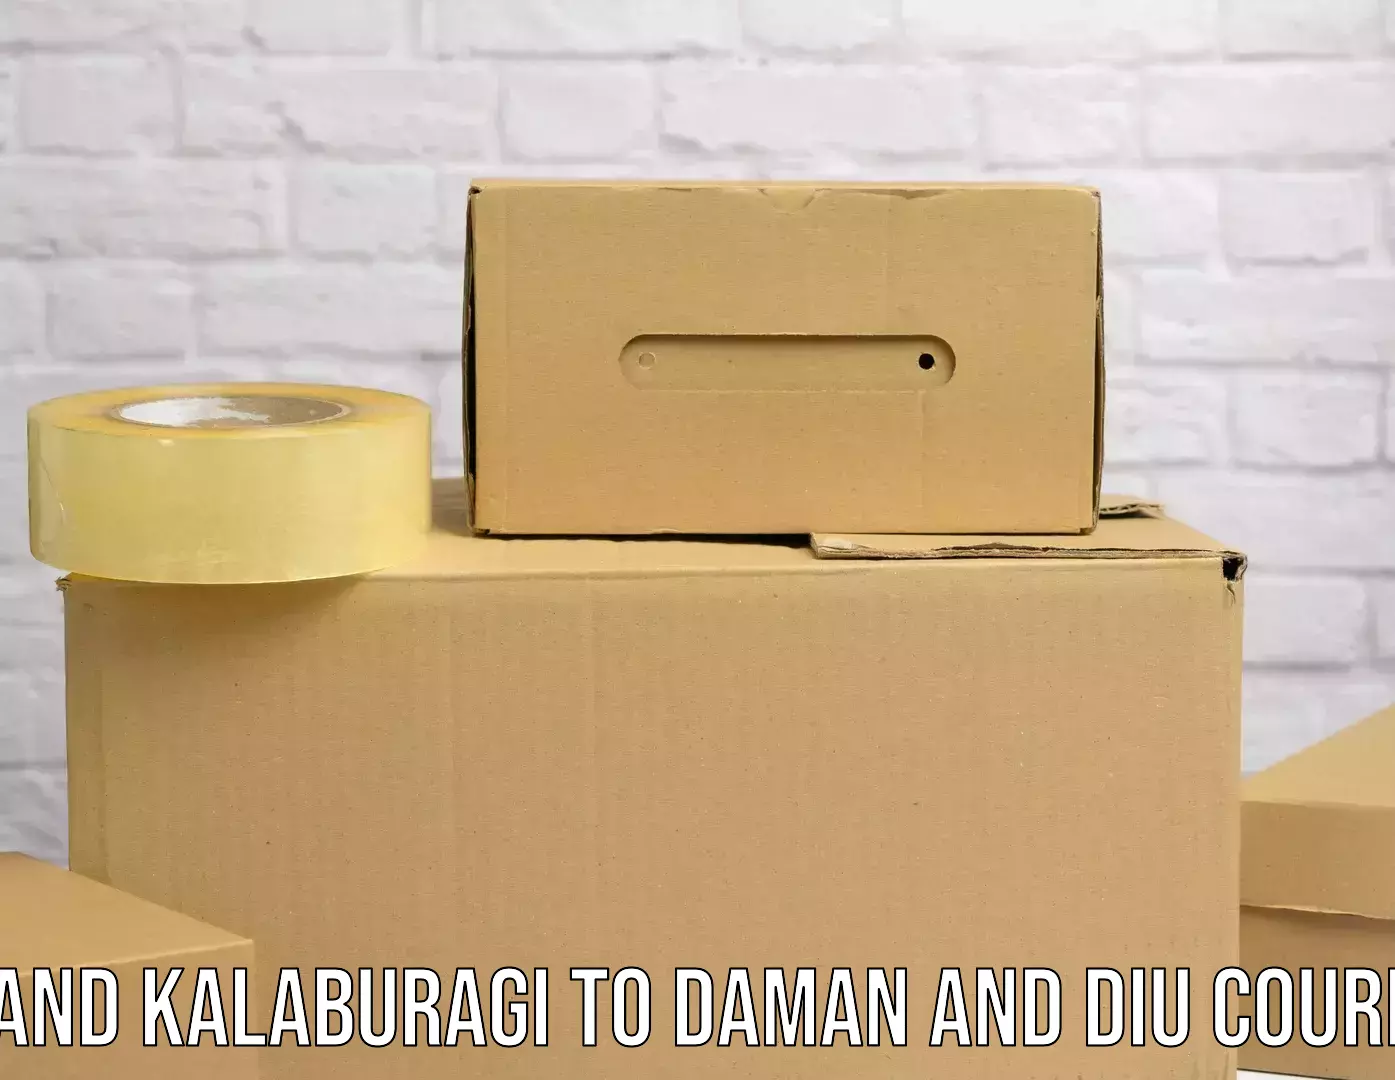 Professional courier handling Aland Kalaburagi to Daman and Diu